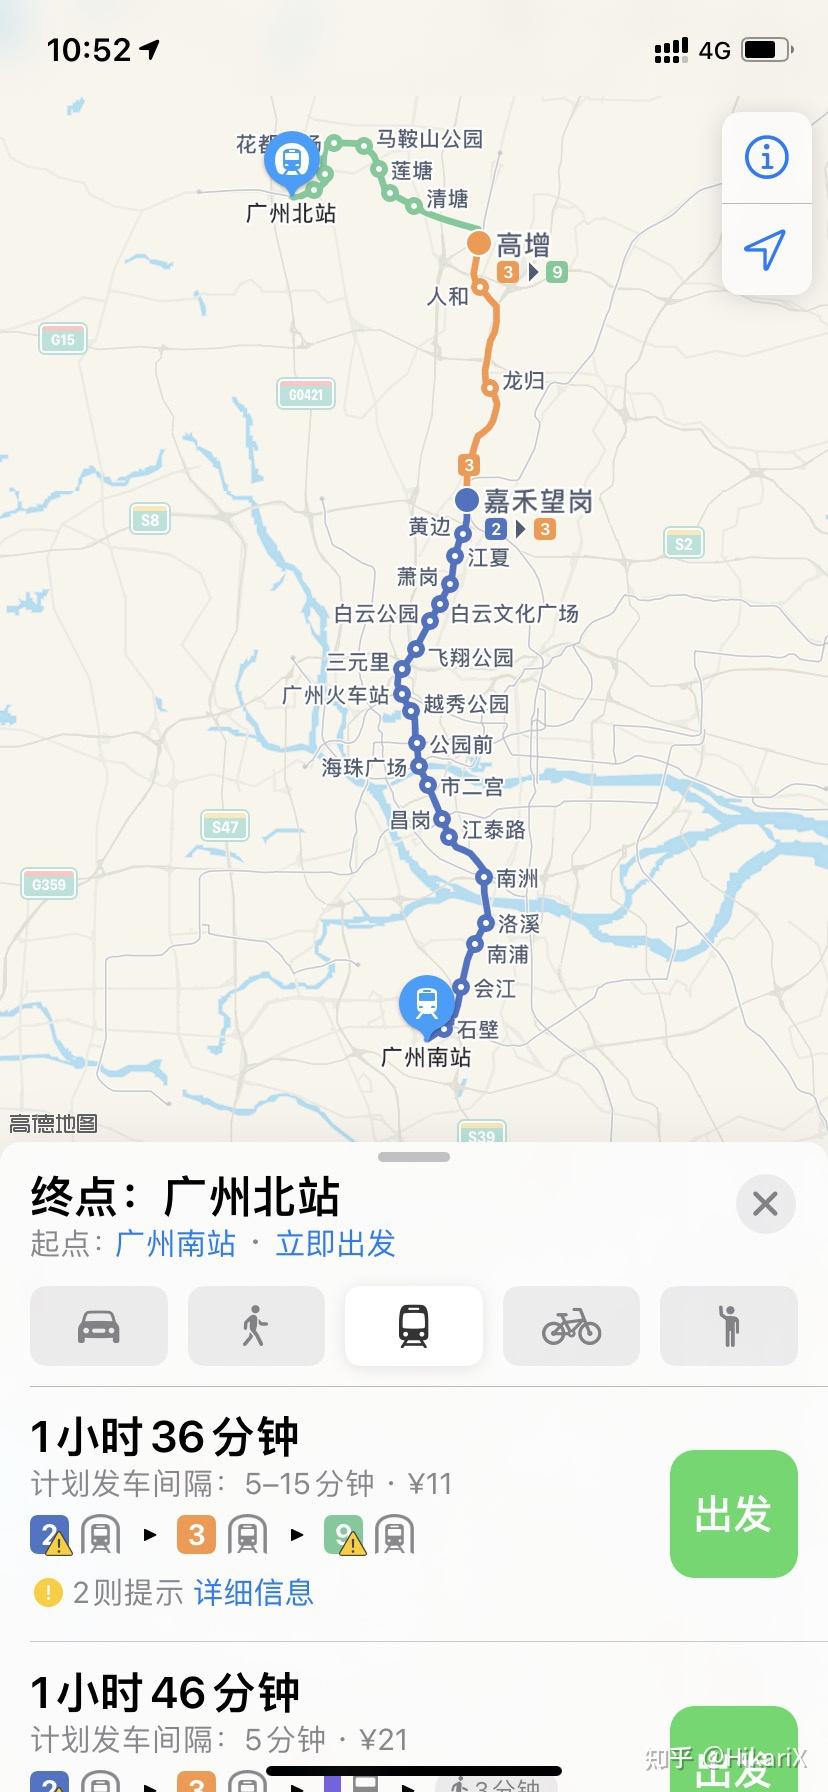 请问一下广州北站怎么坐地铁到广州南站